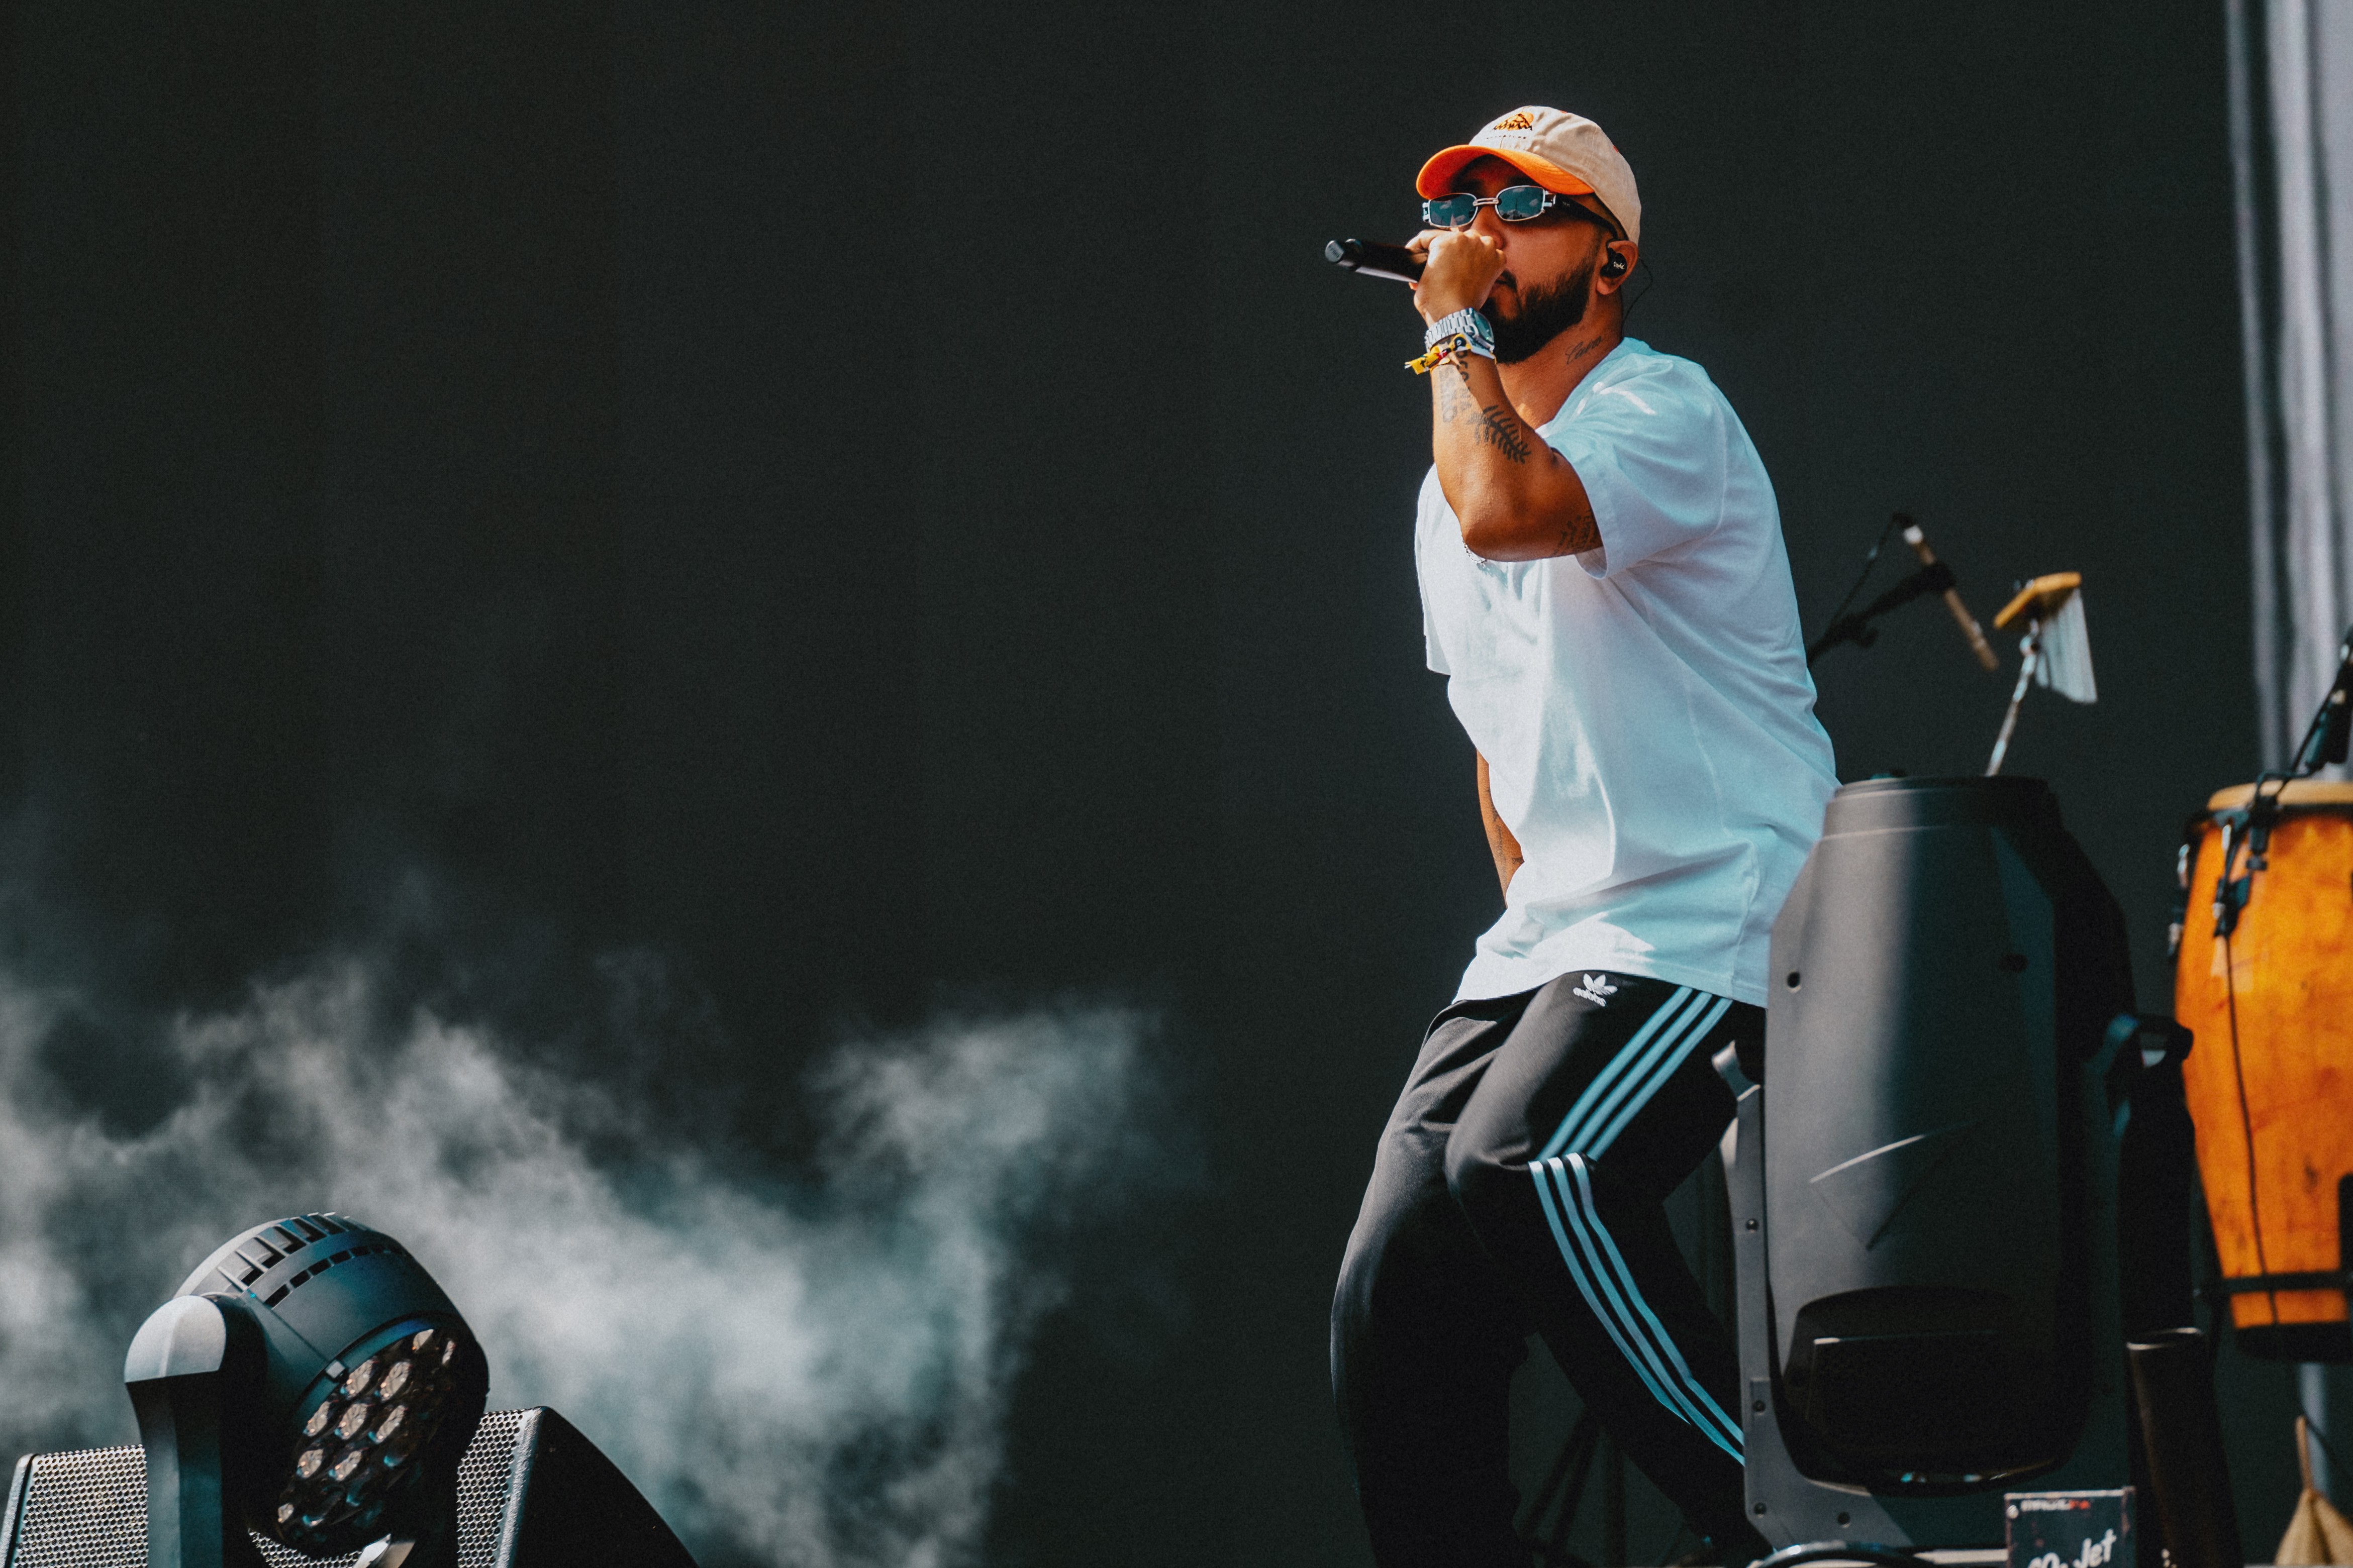 Rashid critica Drake por cancelar show 'em cima da hora': 'Me sinto ofendido'